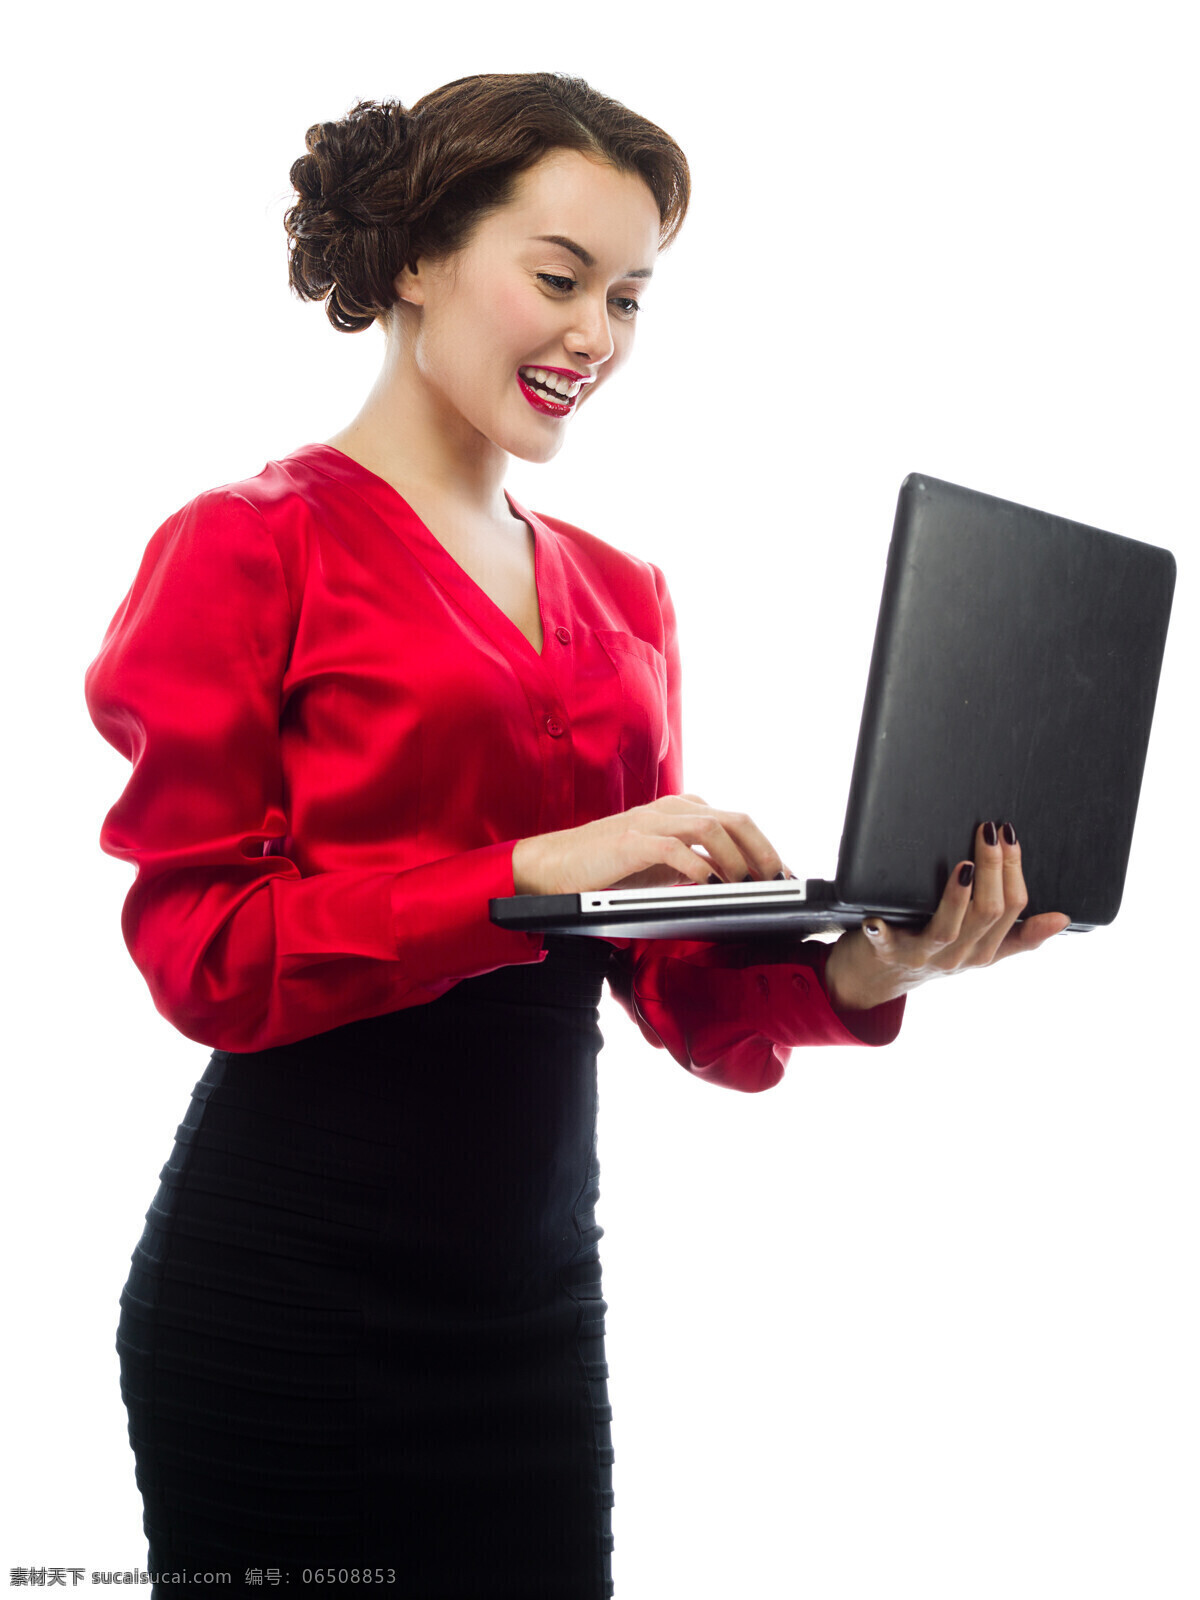 手 托 笔记本 职业 女人 商务女人 职业女性 女人图片 红衣女子 工作 衬衫女人 商务人士 人物图片